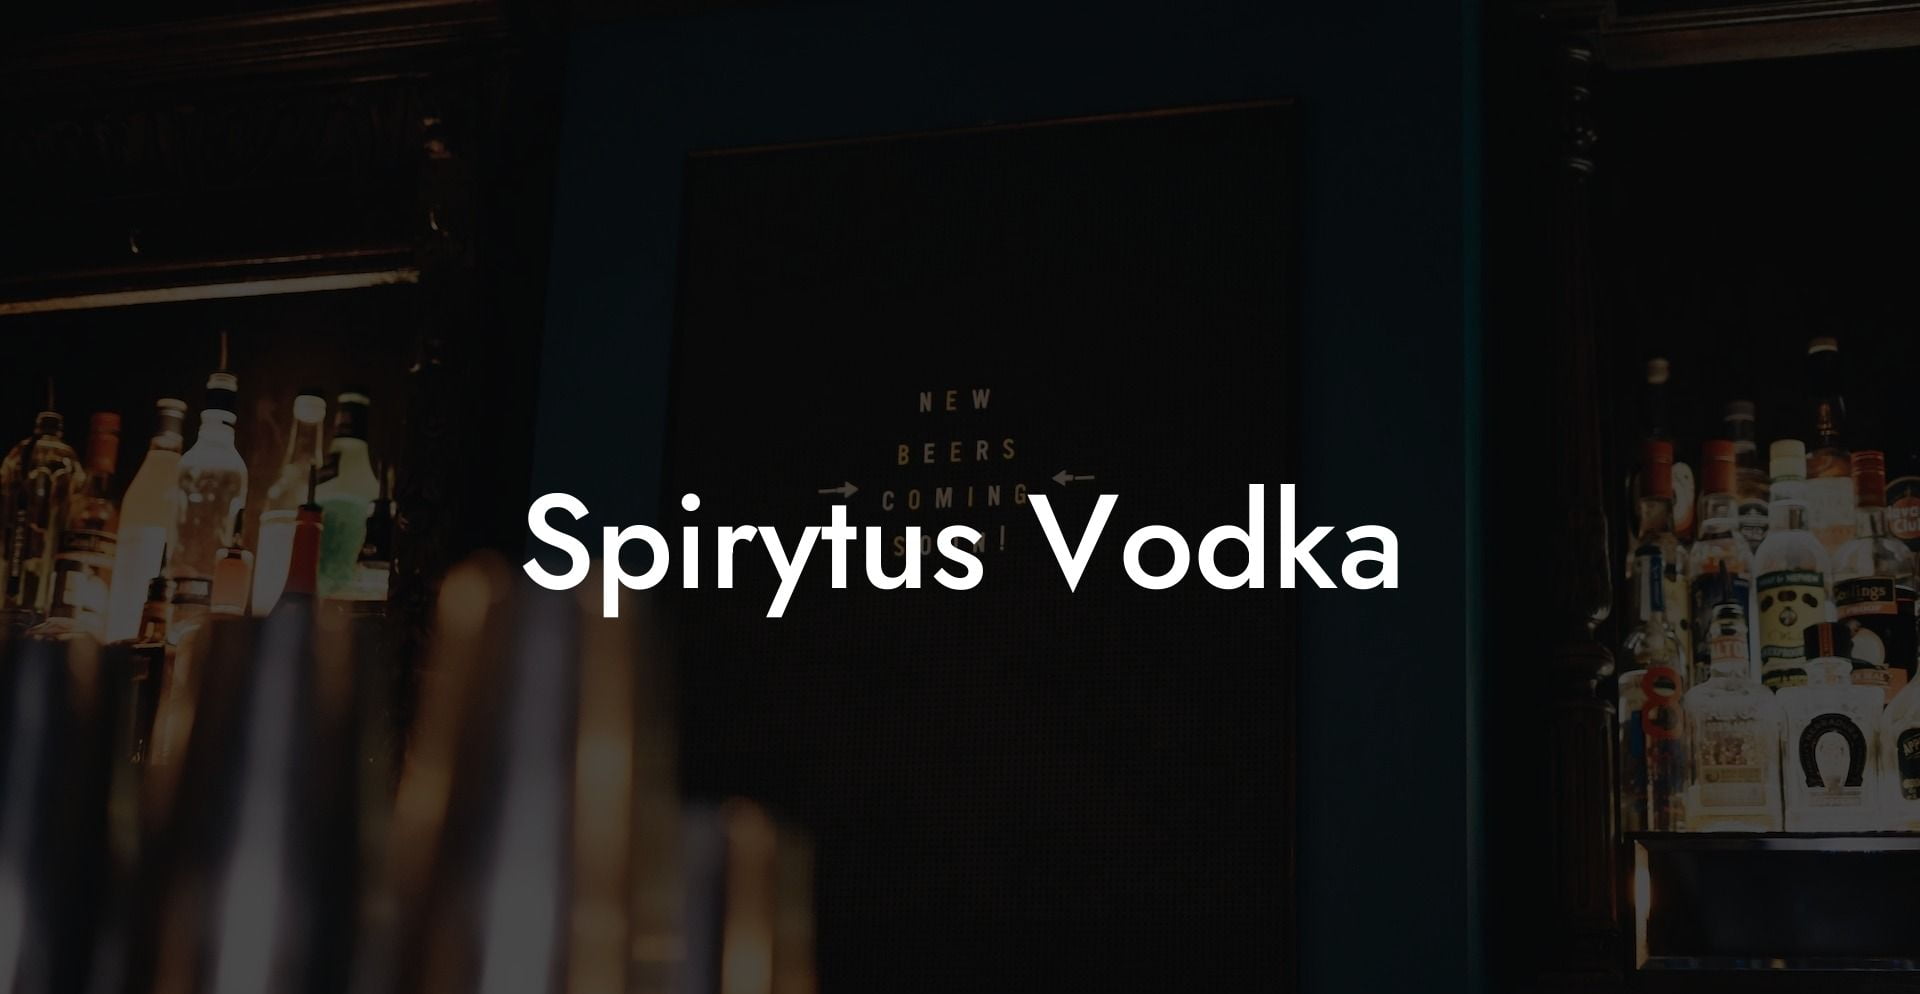 Spirytus Vodka